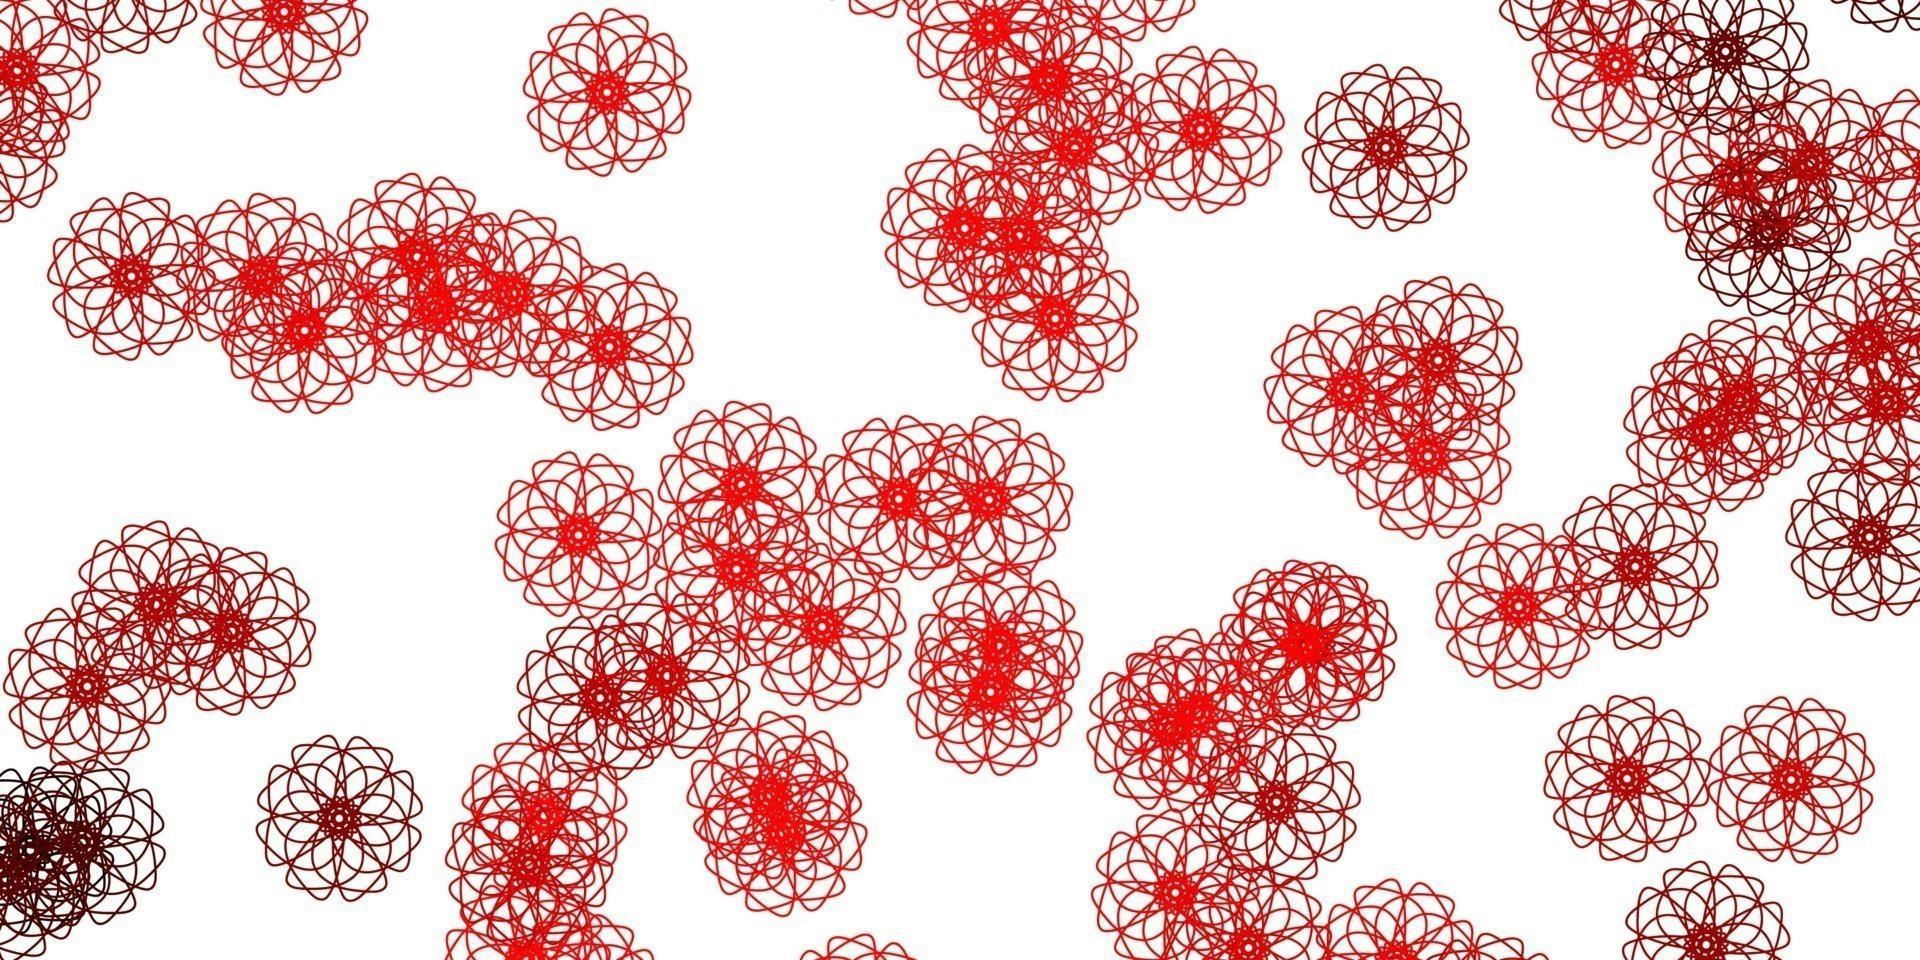 textura de doodle de vector rojo claro con flores.